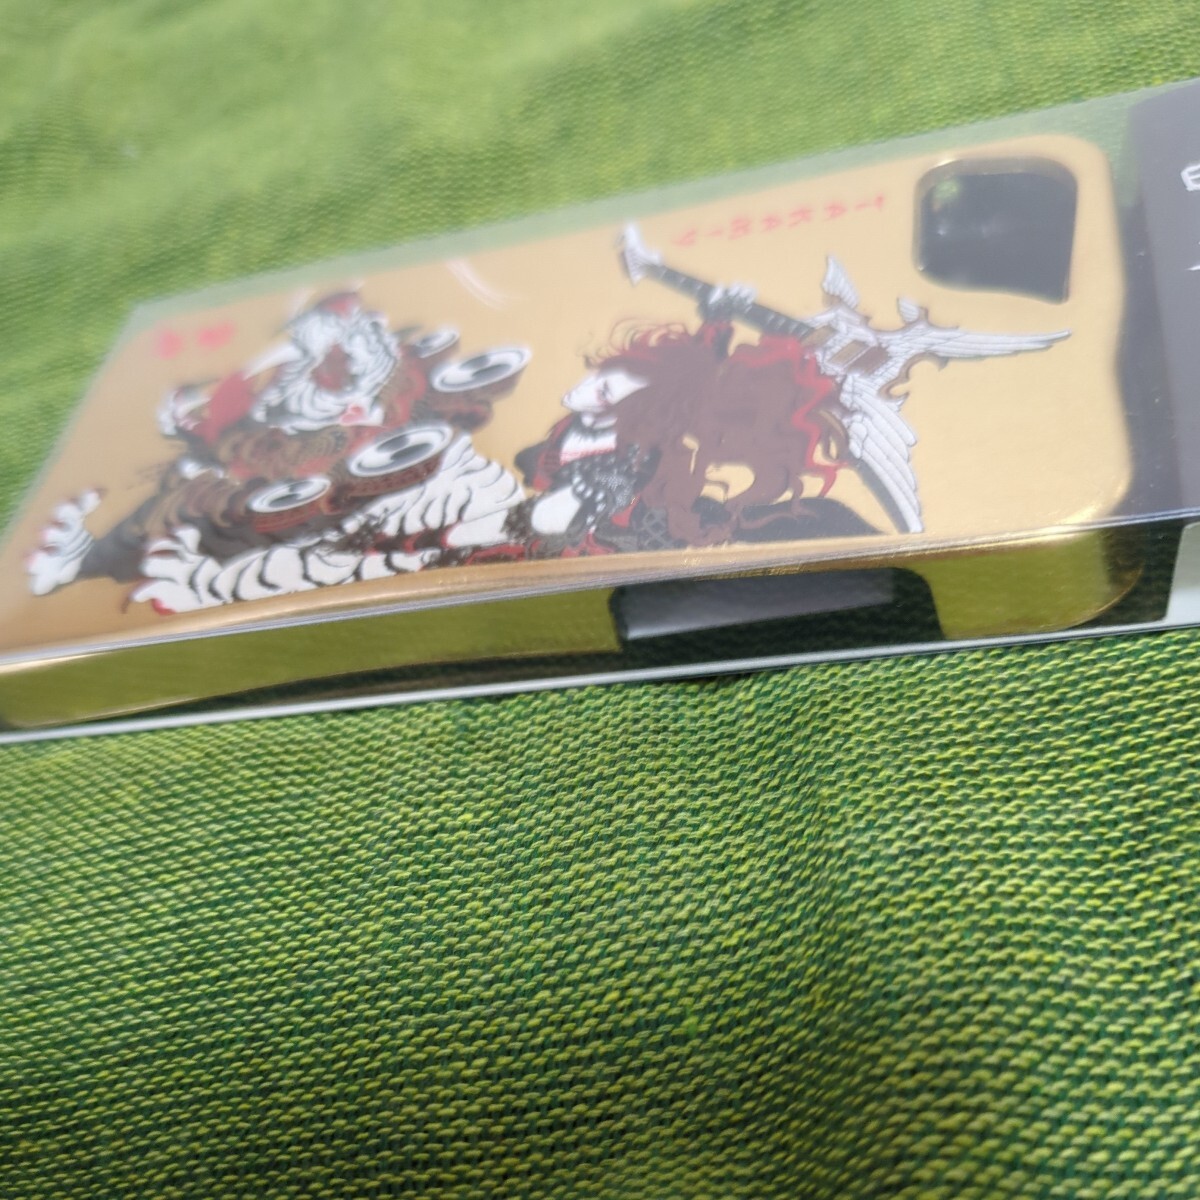 iPhone5 для смартфон кейс *TAKMIY 2013. бог raizin* лакированные изделия . лаковый покрытие японский традиция Gold золотой серия ALFEE Alf .- высота видеть ...takami-...